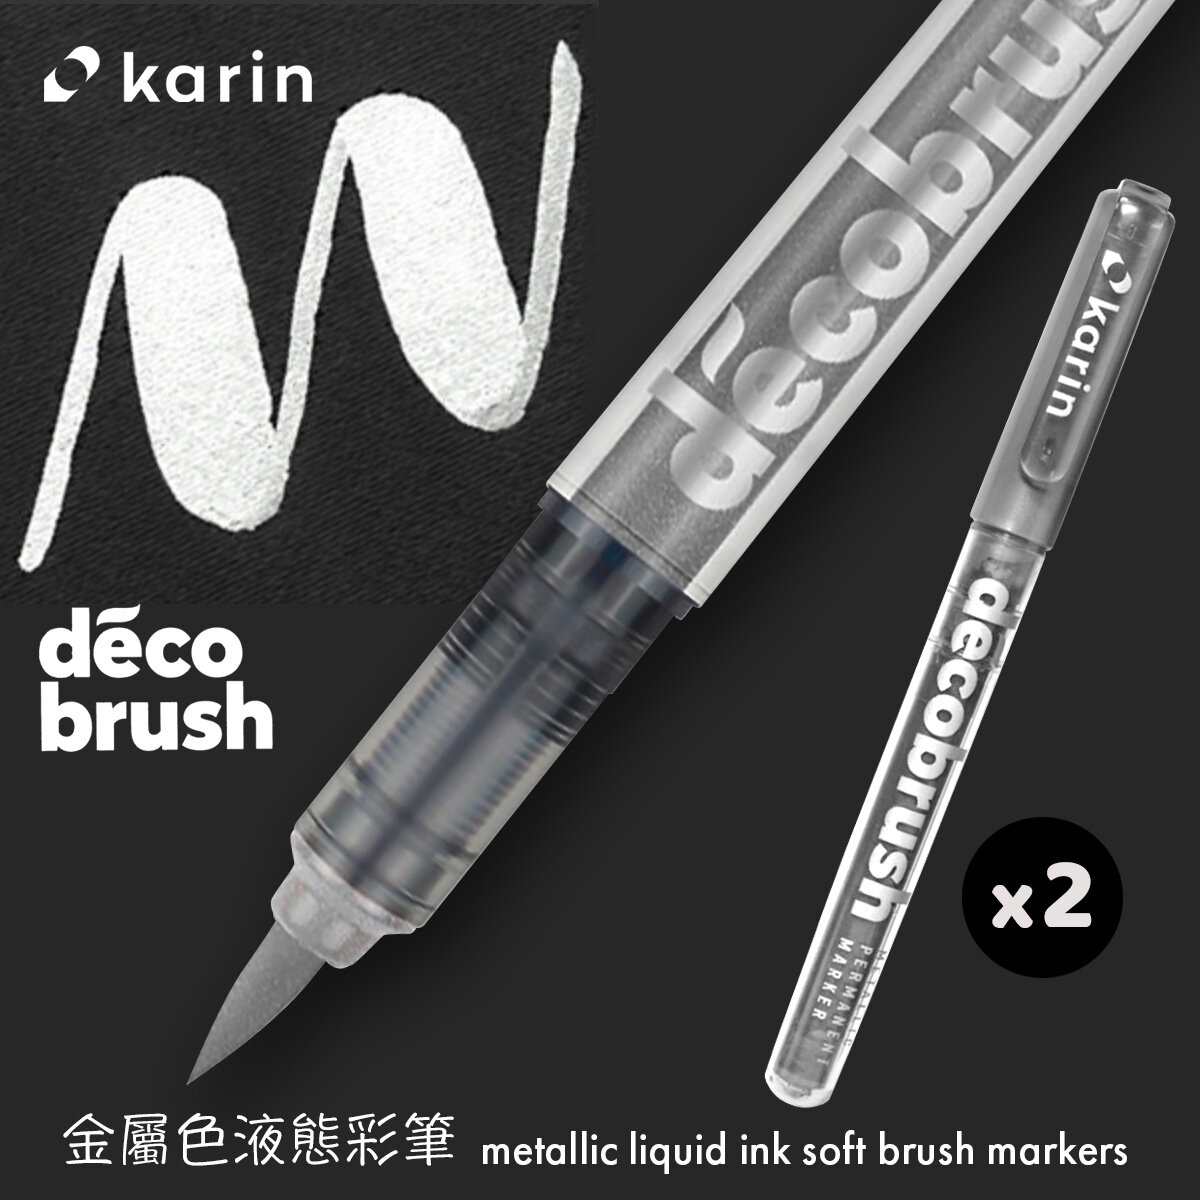 Karin DecoBrush Metallic